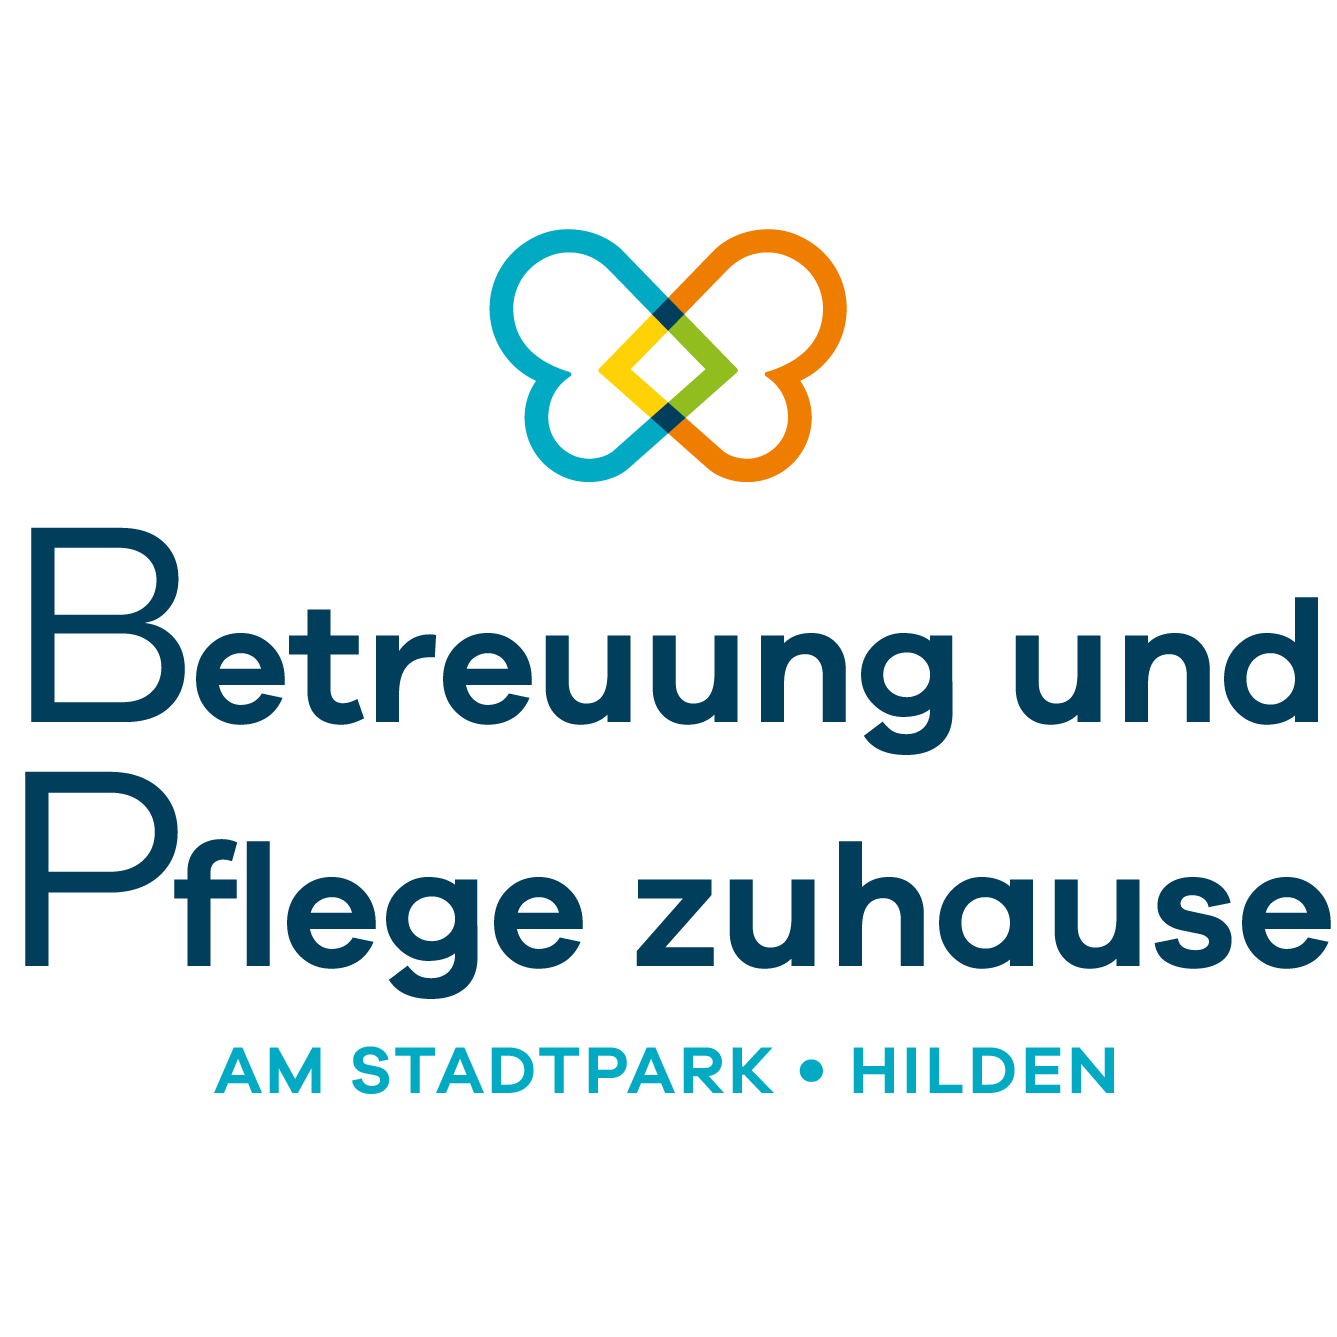 Betreuung und Pflege zuhause am Stadtpark Hilden in Hilden - Logo